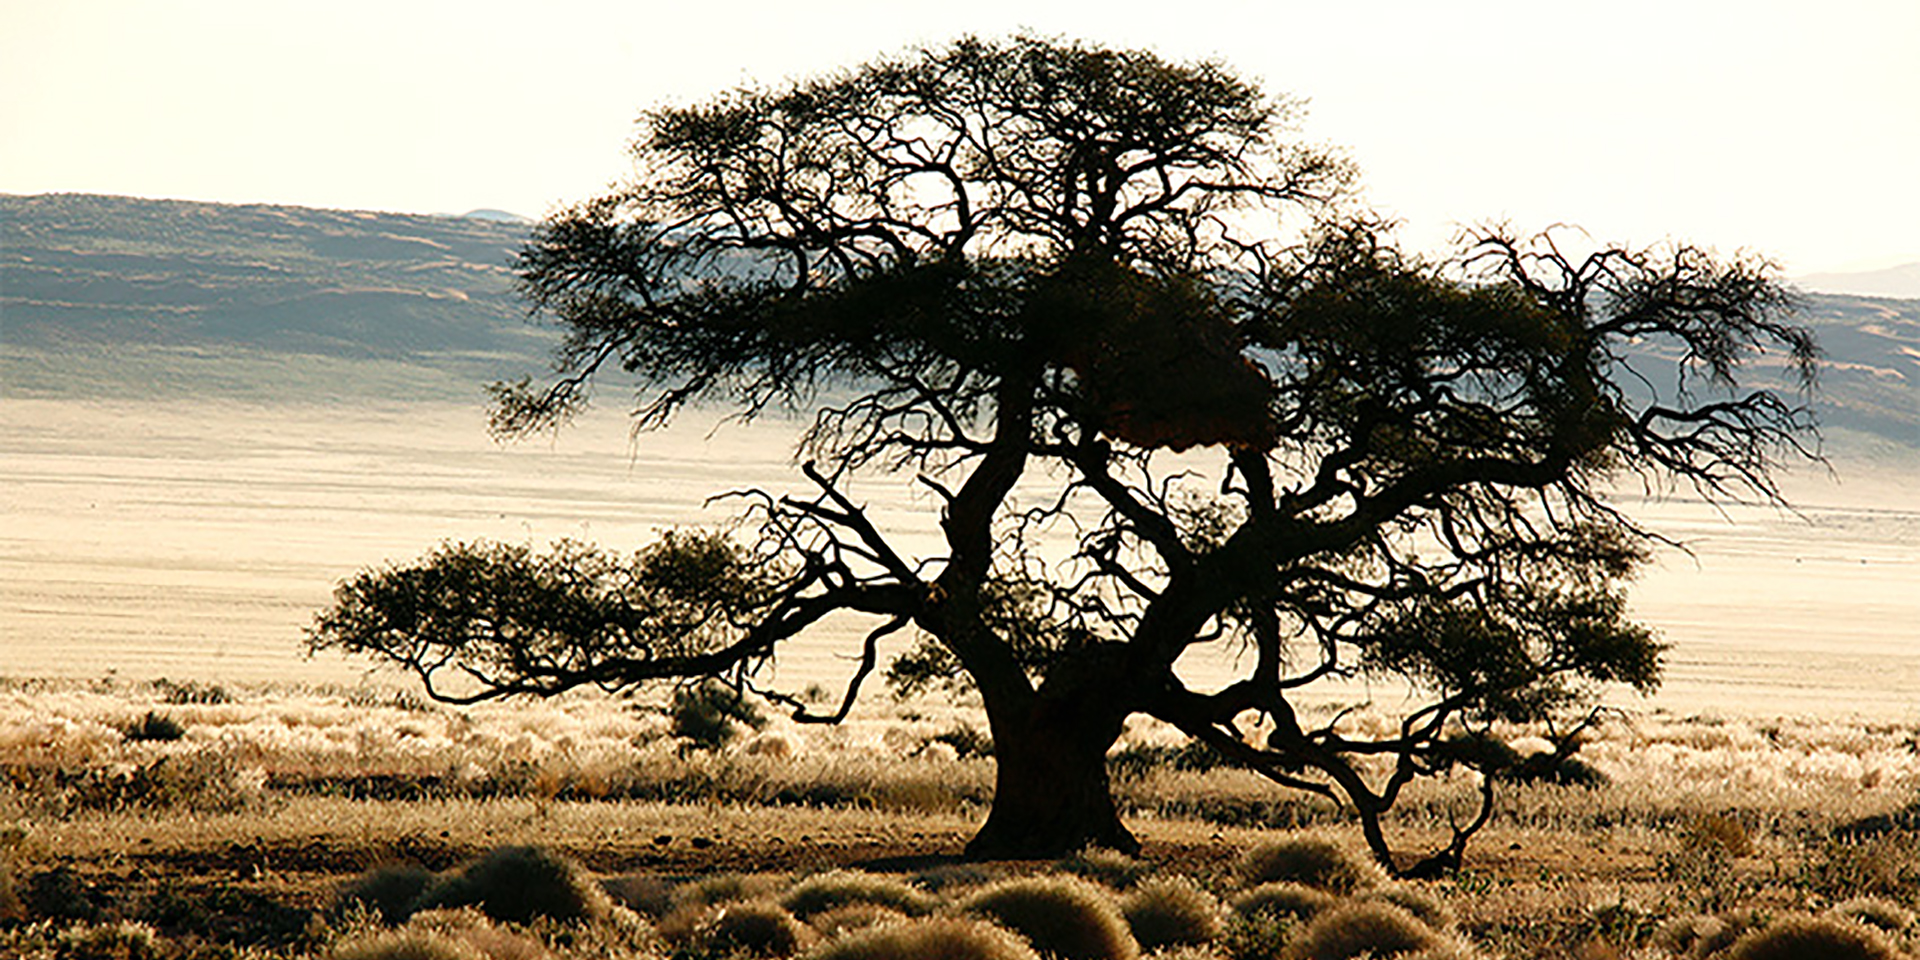 Acacia tree, Namibia